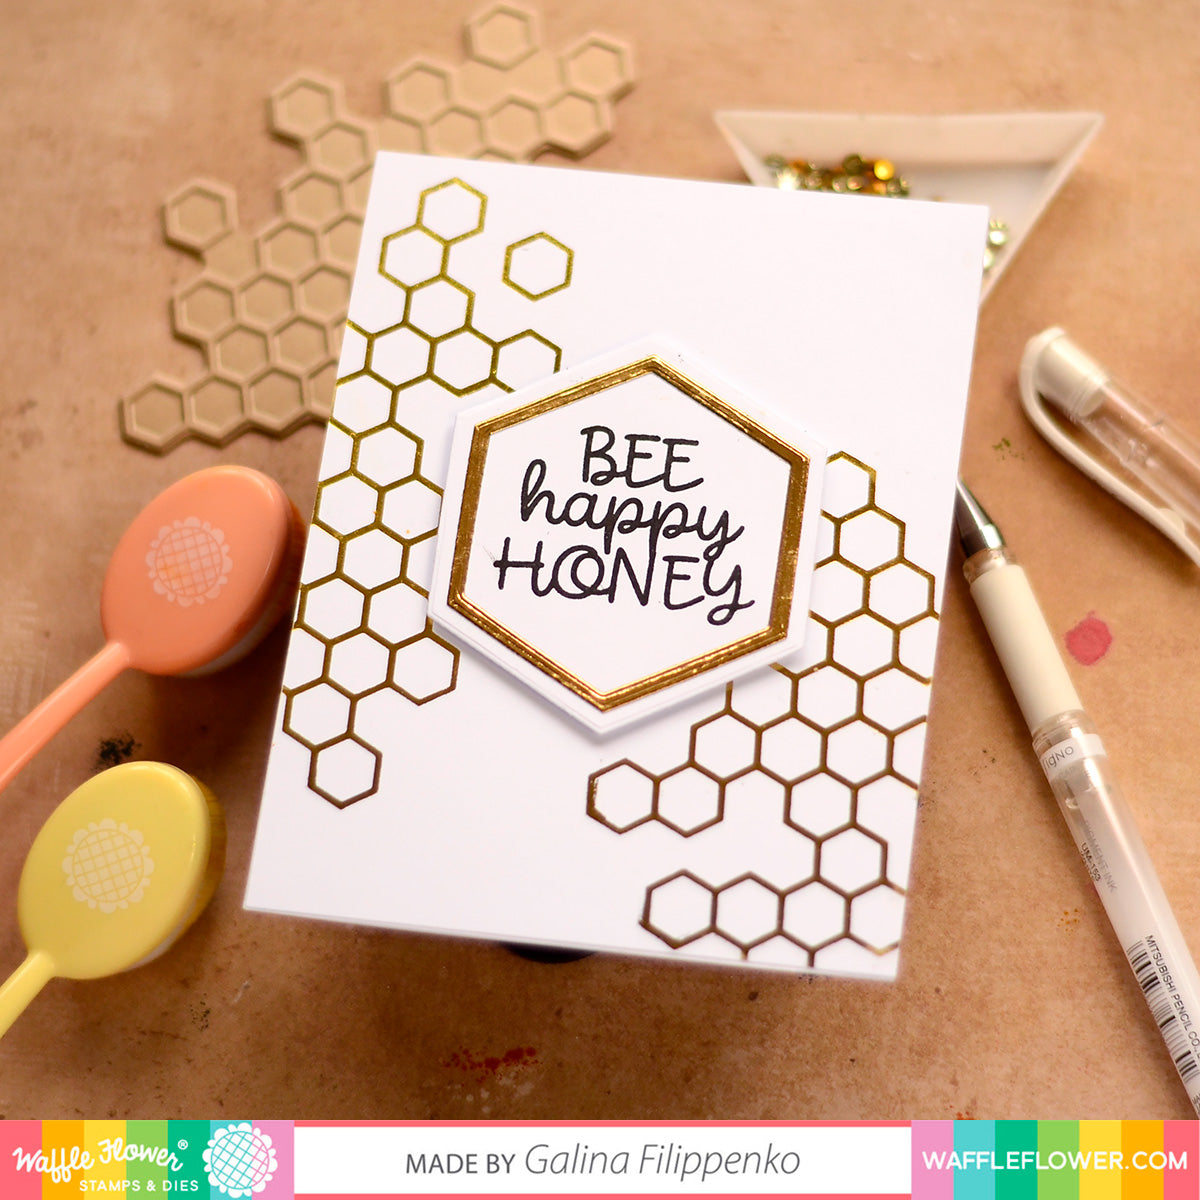 CF513 Bee Stamp Set – CraftFancy